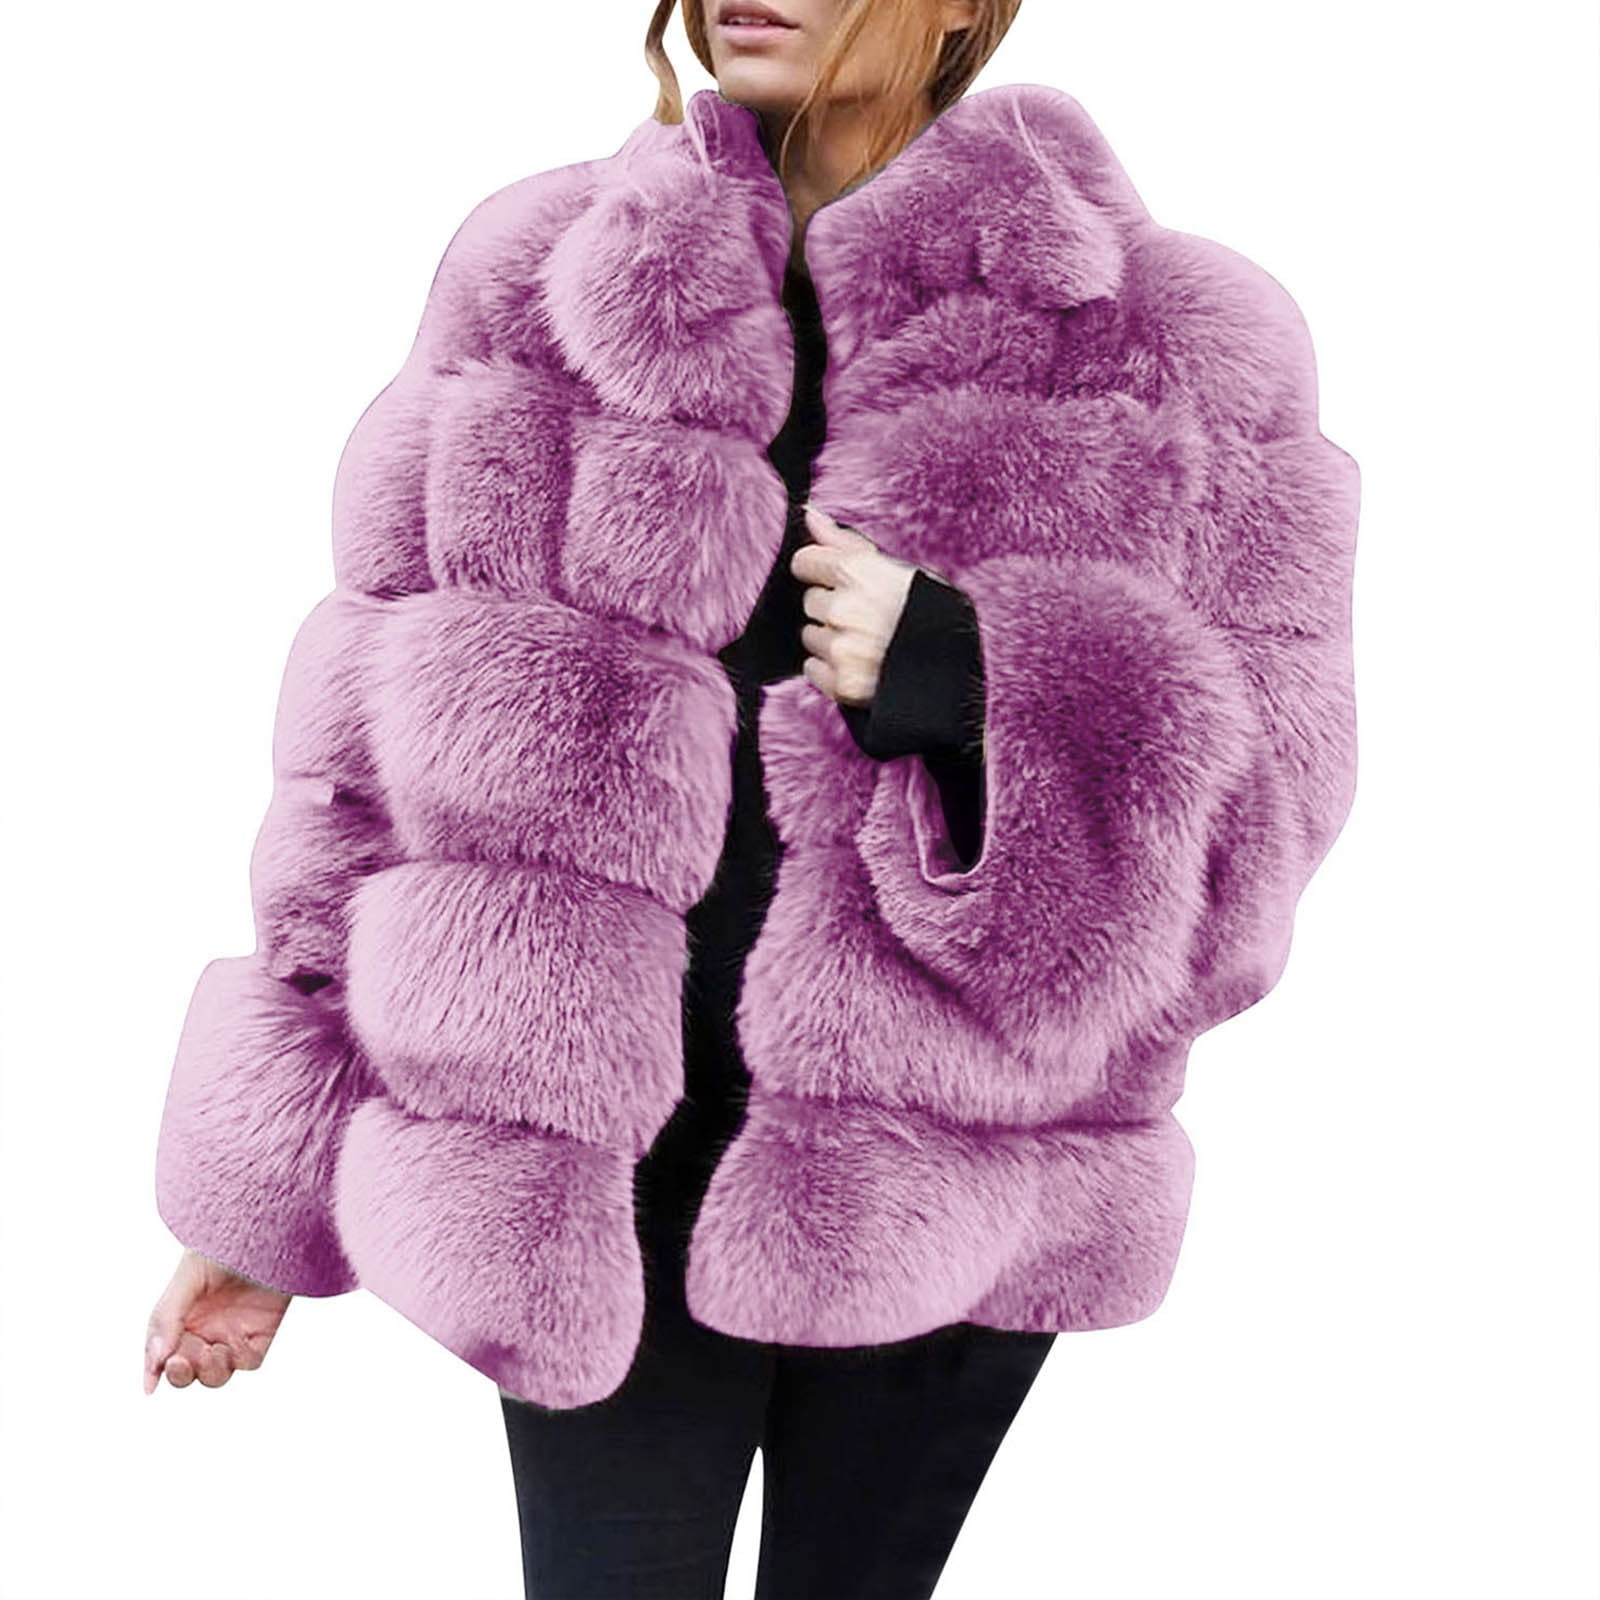 Women's Faux Fur Coat Jacket Winter Thick Fuzzy Warm Overcoat Long ...